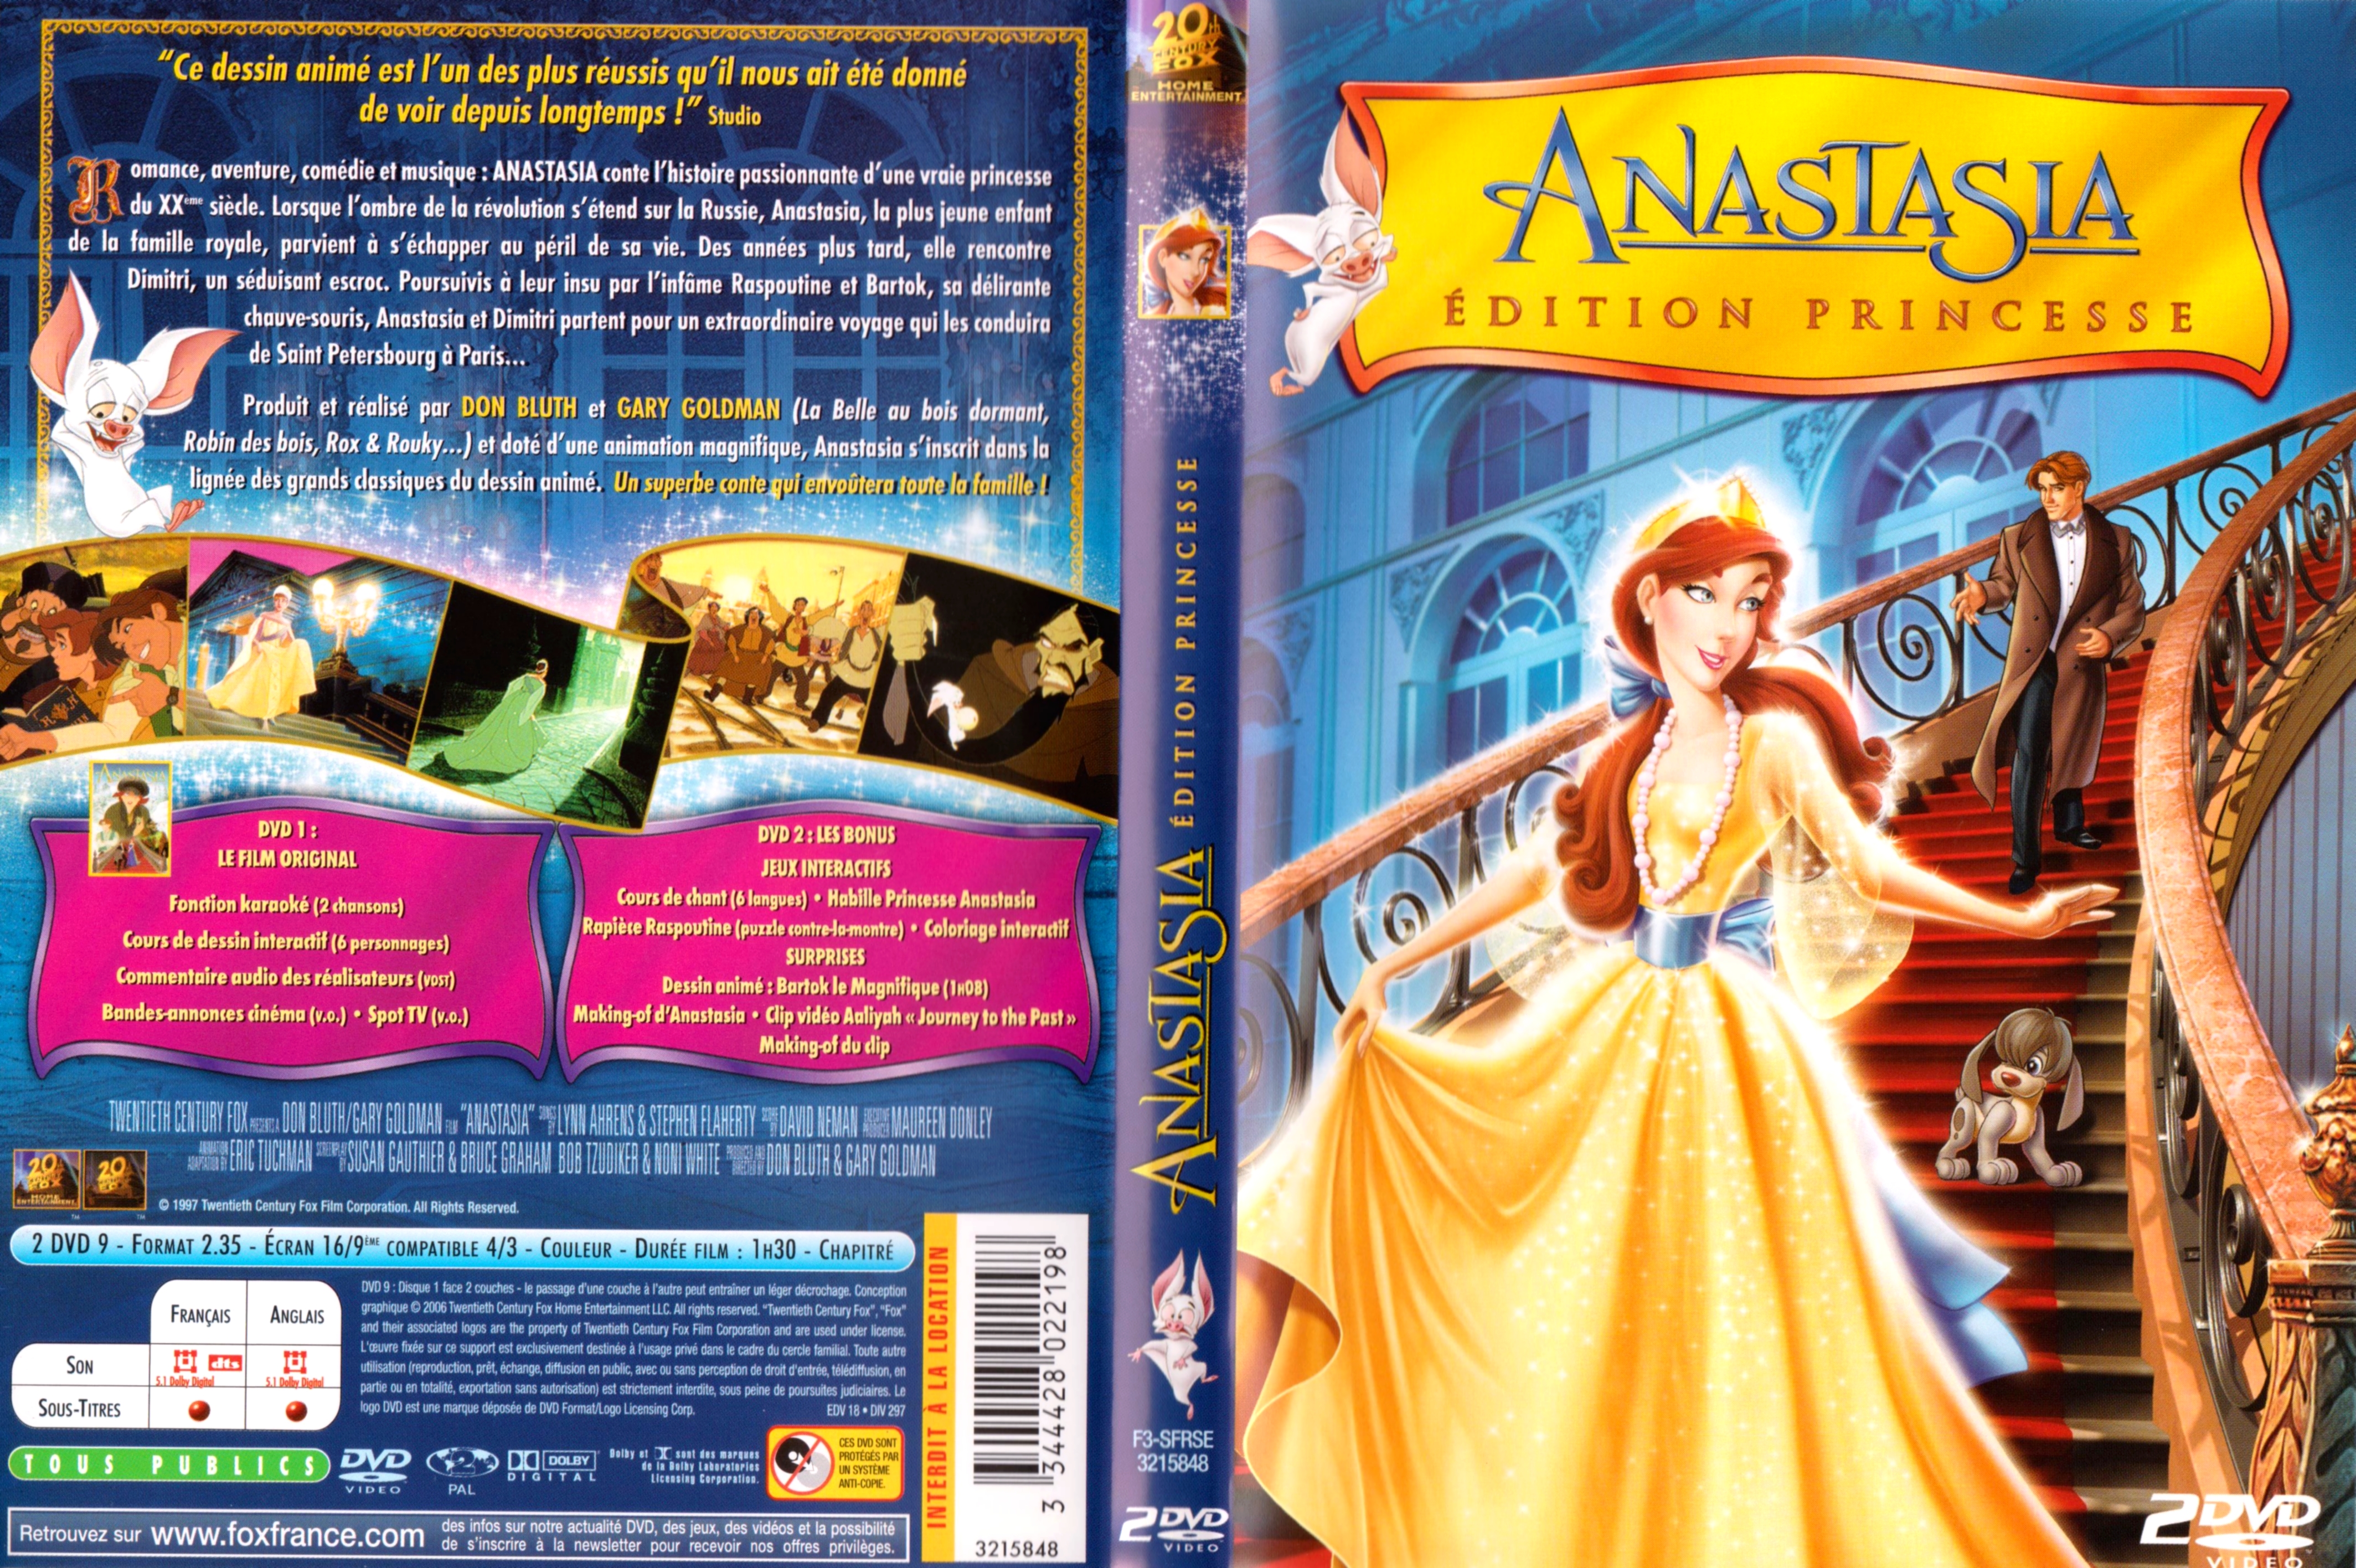 Jaquette DVD Anastasia v3